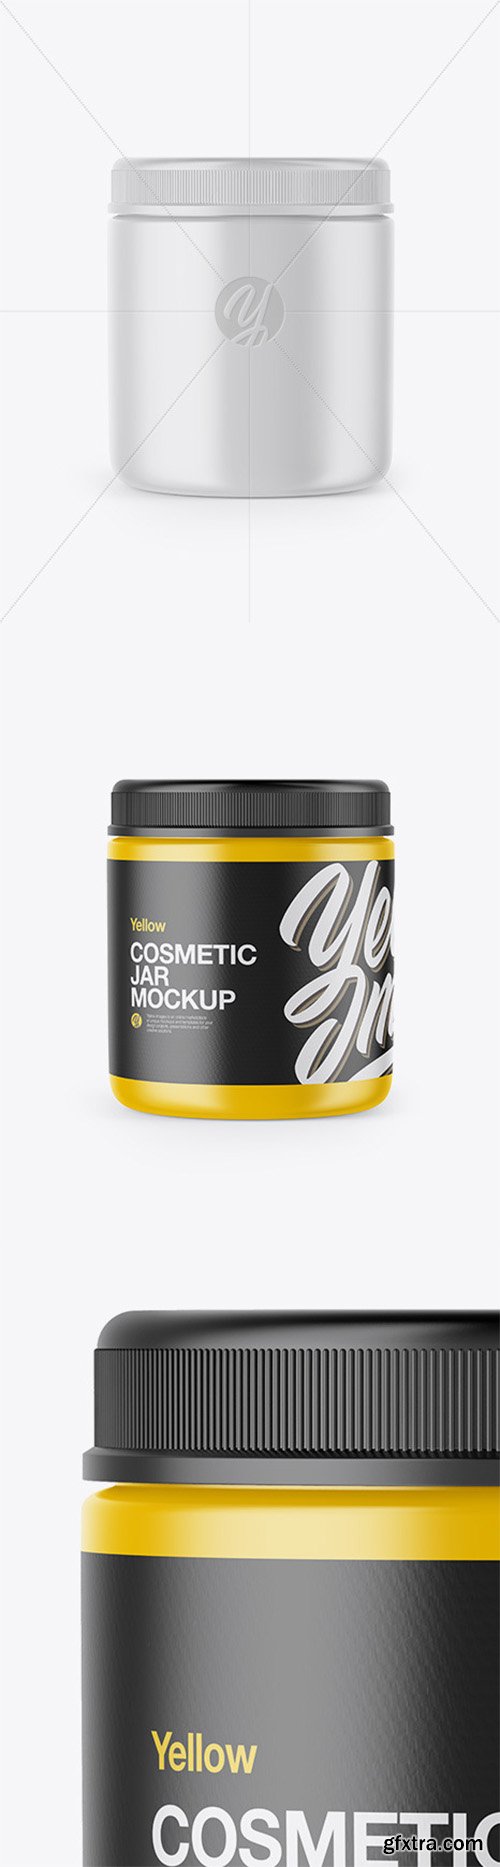 Matte Cosmetic Jar Mockup 52712